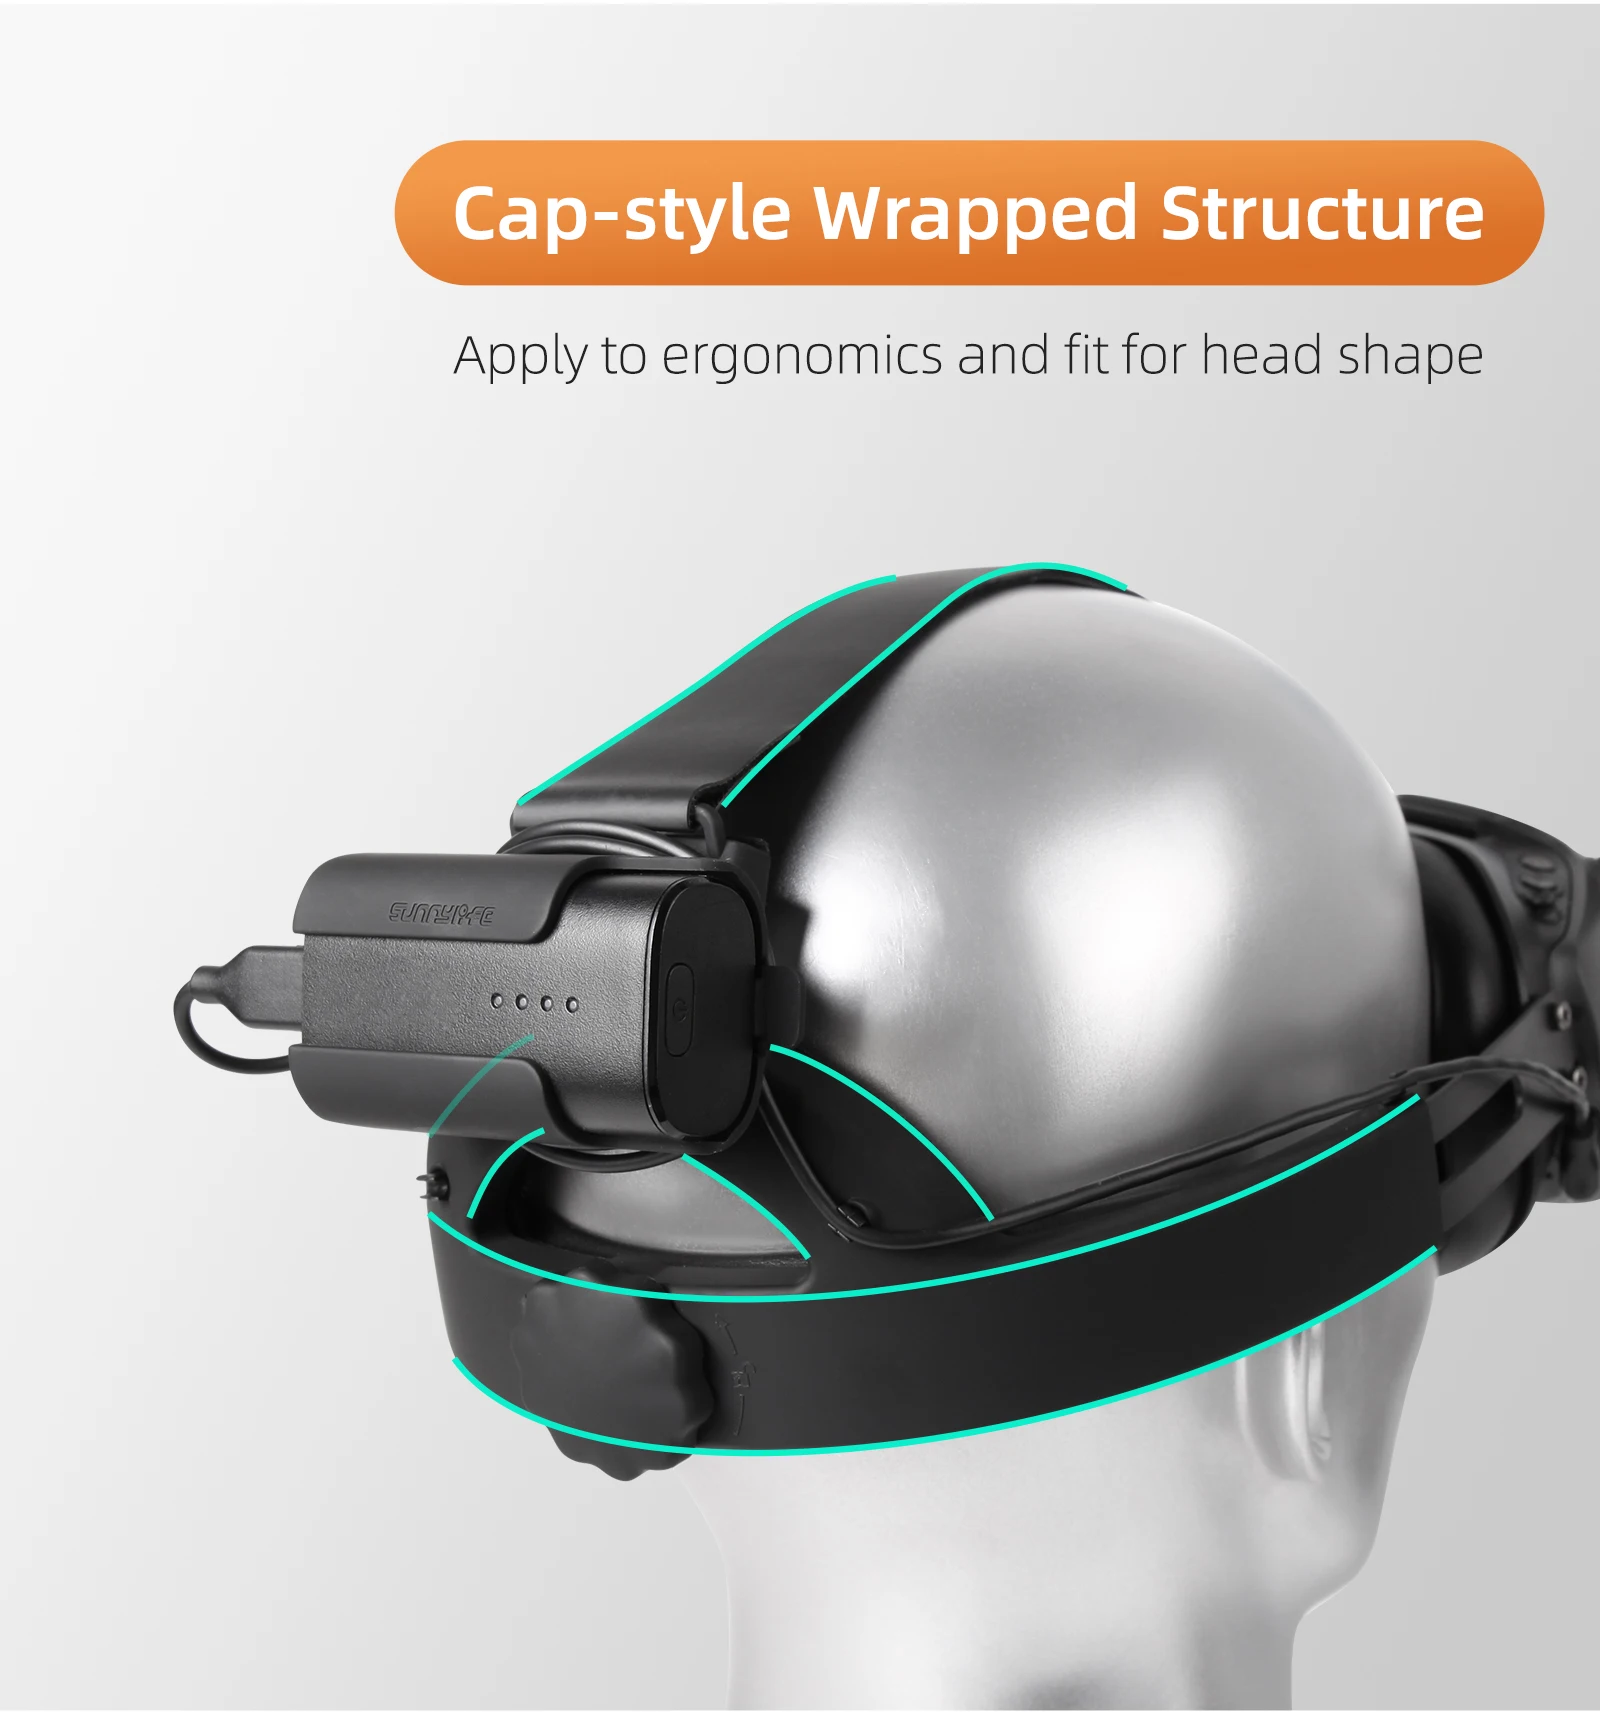 Drohnenbrillen V2 Verstellbarer Kopfgurt mit Batterieclip -Entlastungs -Gesichtsdruck -Ersatzriemen für Avata/FPV -Schutzbrillen V2 -Zubehör